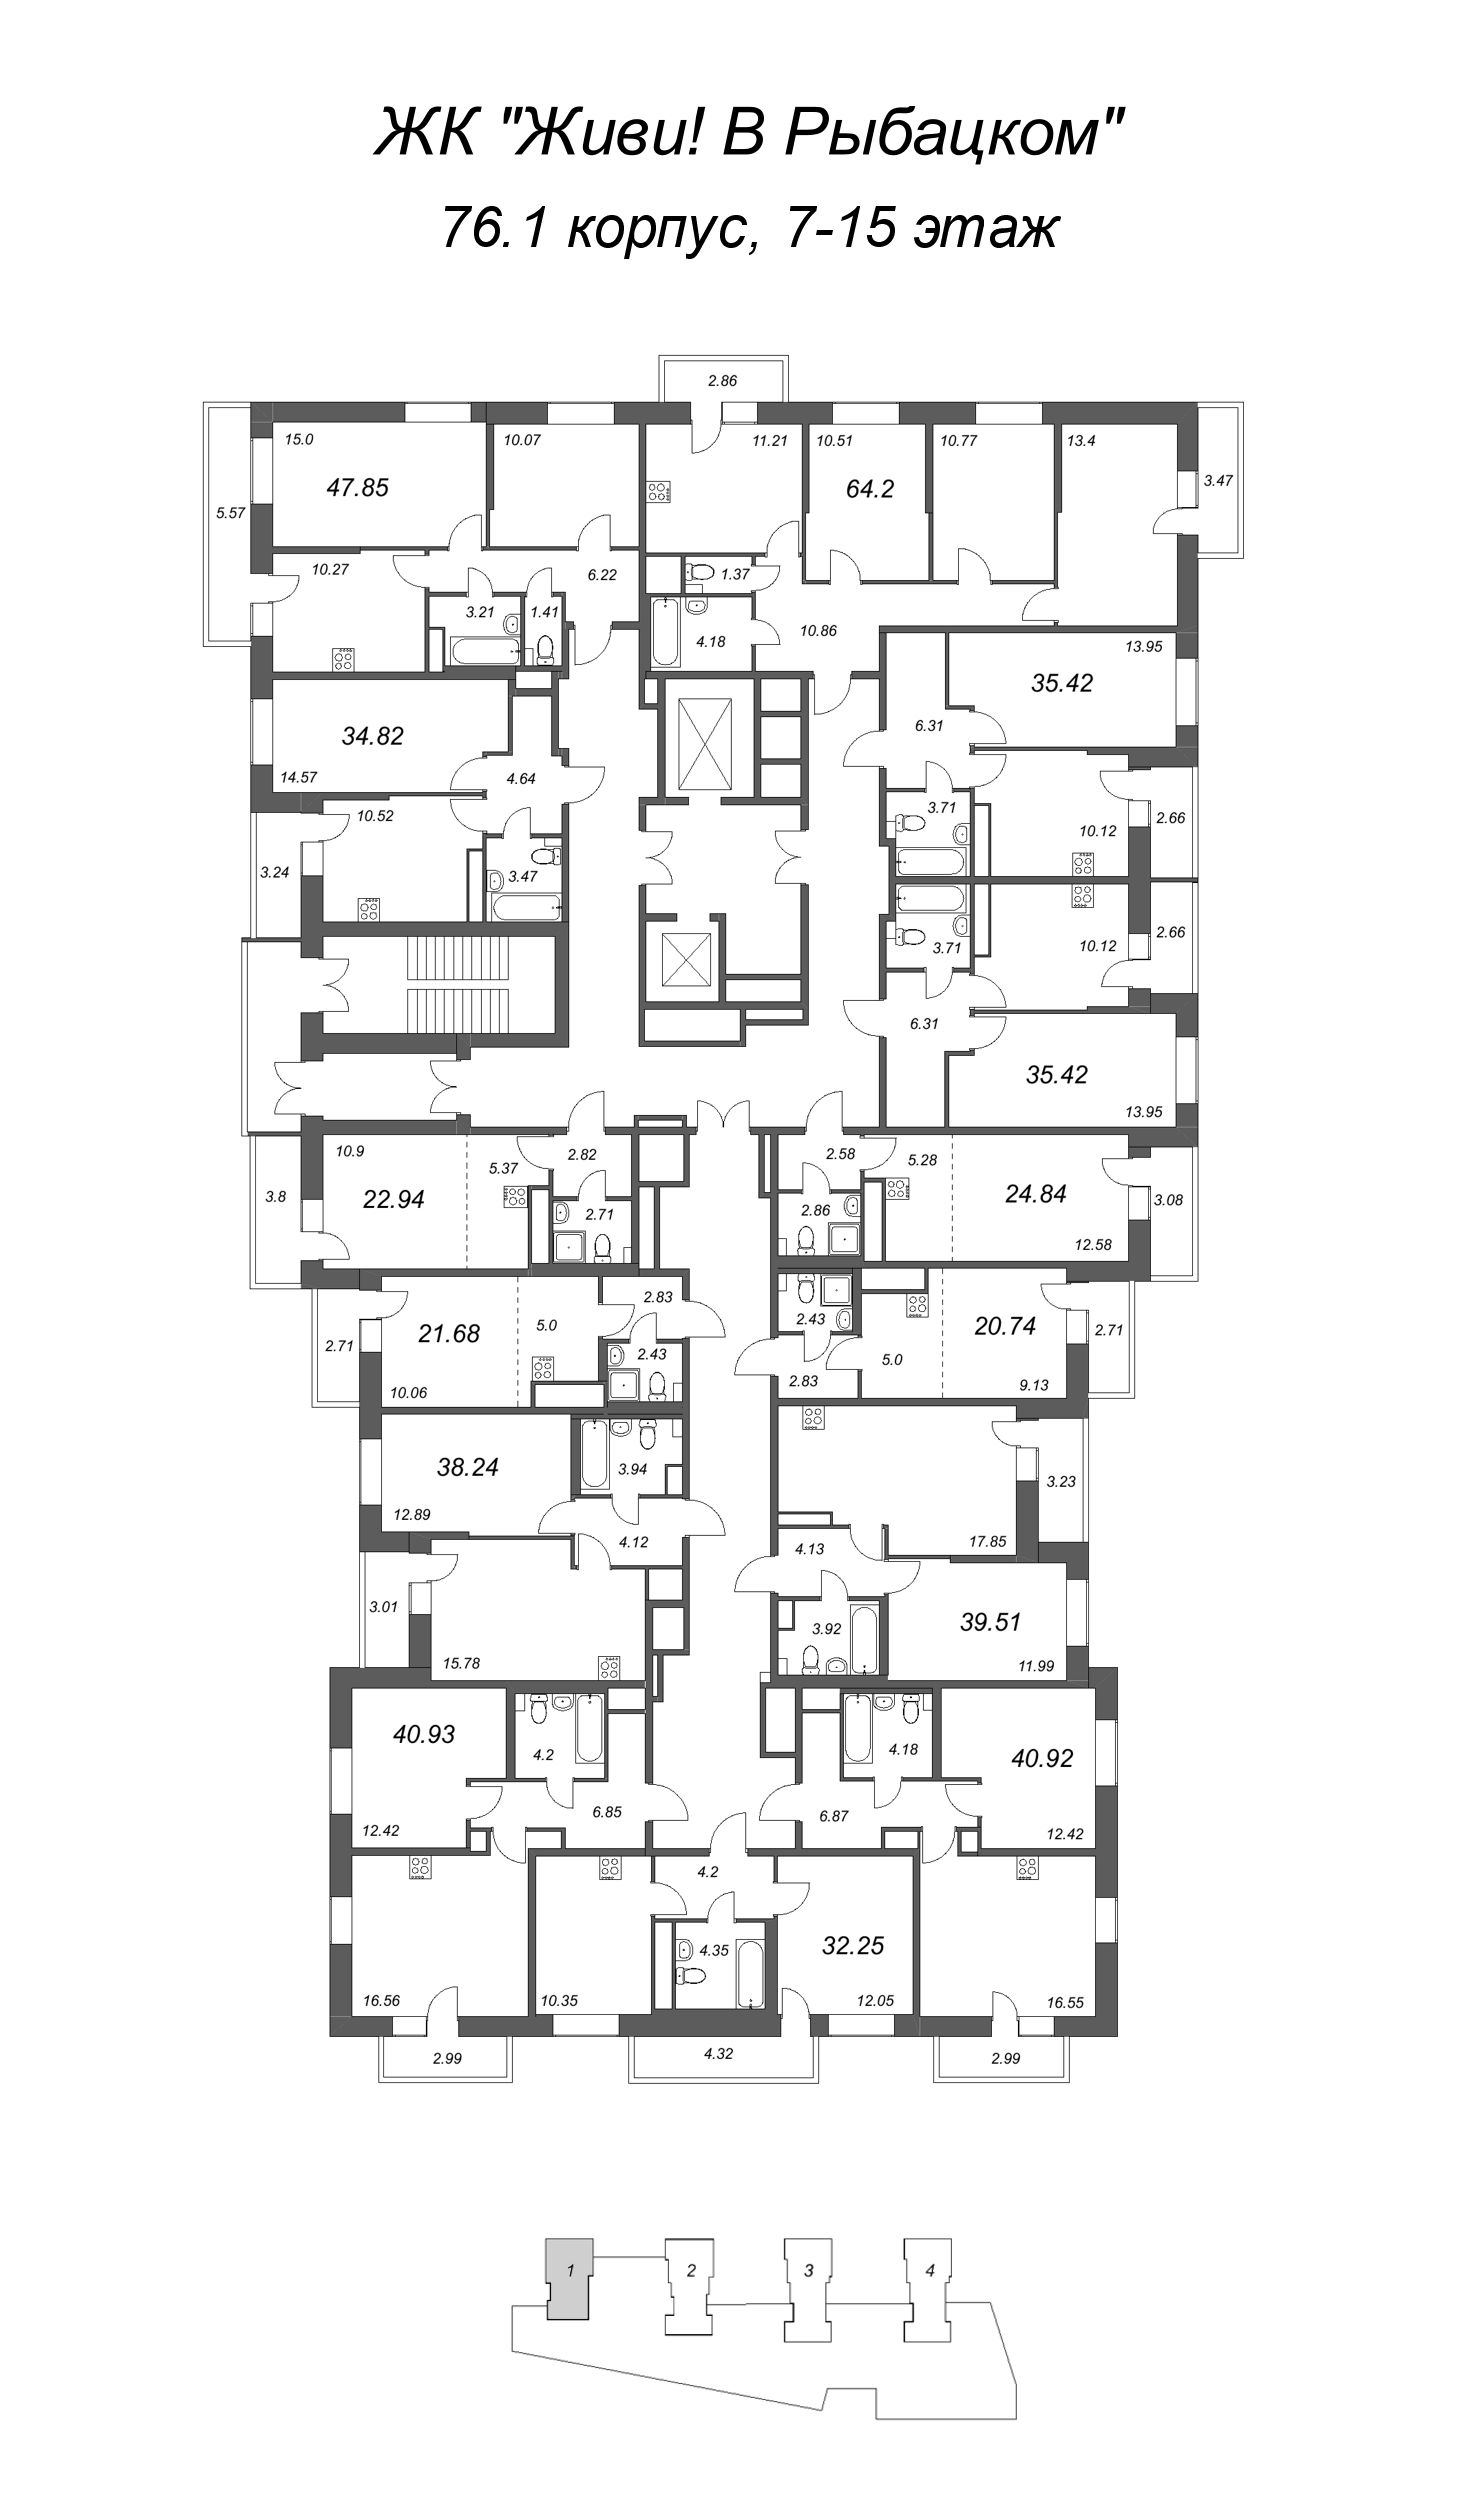 2-комнатная квартира, 47.85 м² в ЖК "Живи! В Рыбацком" - планировка этажа